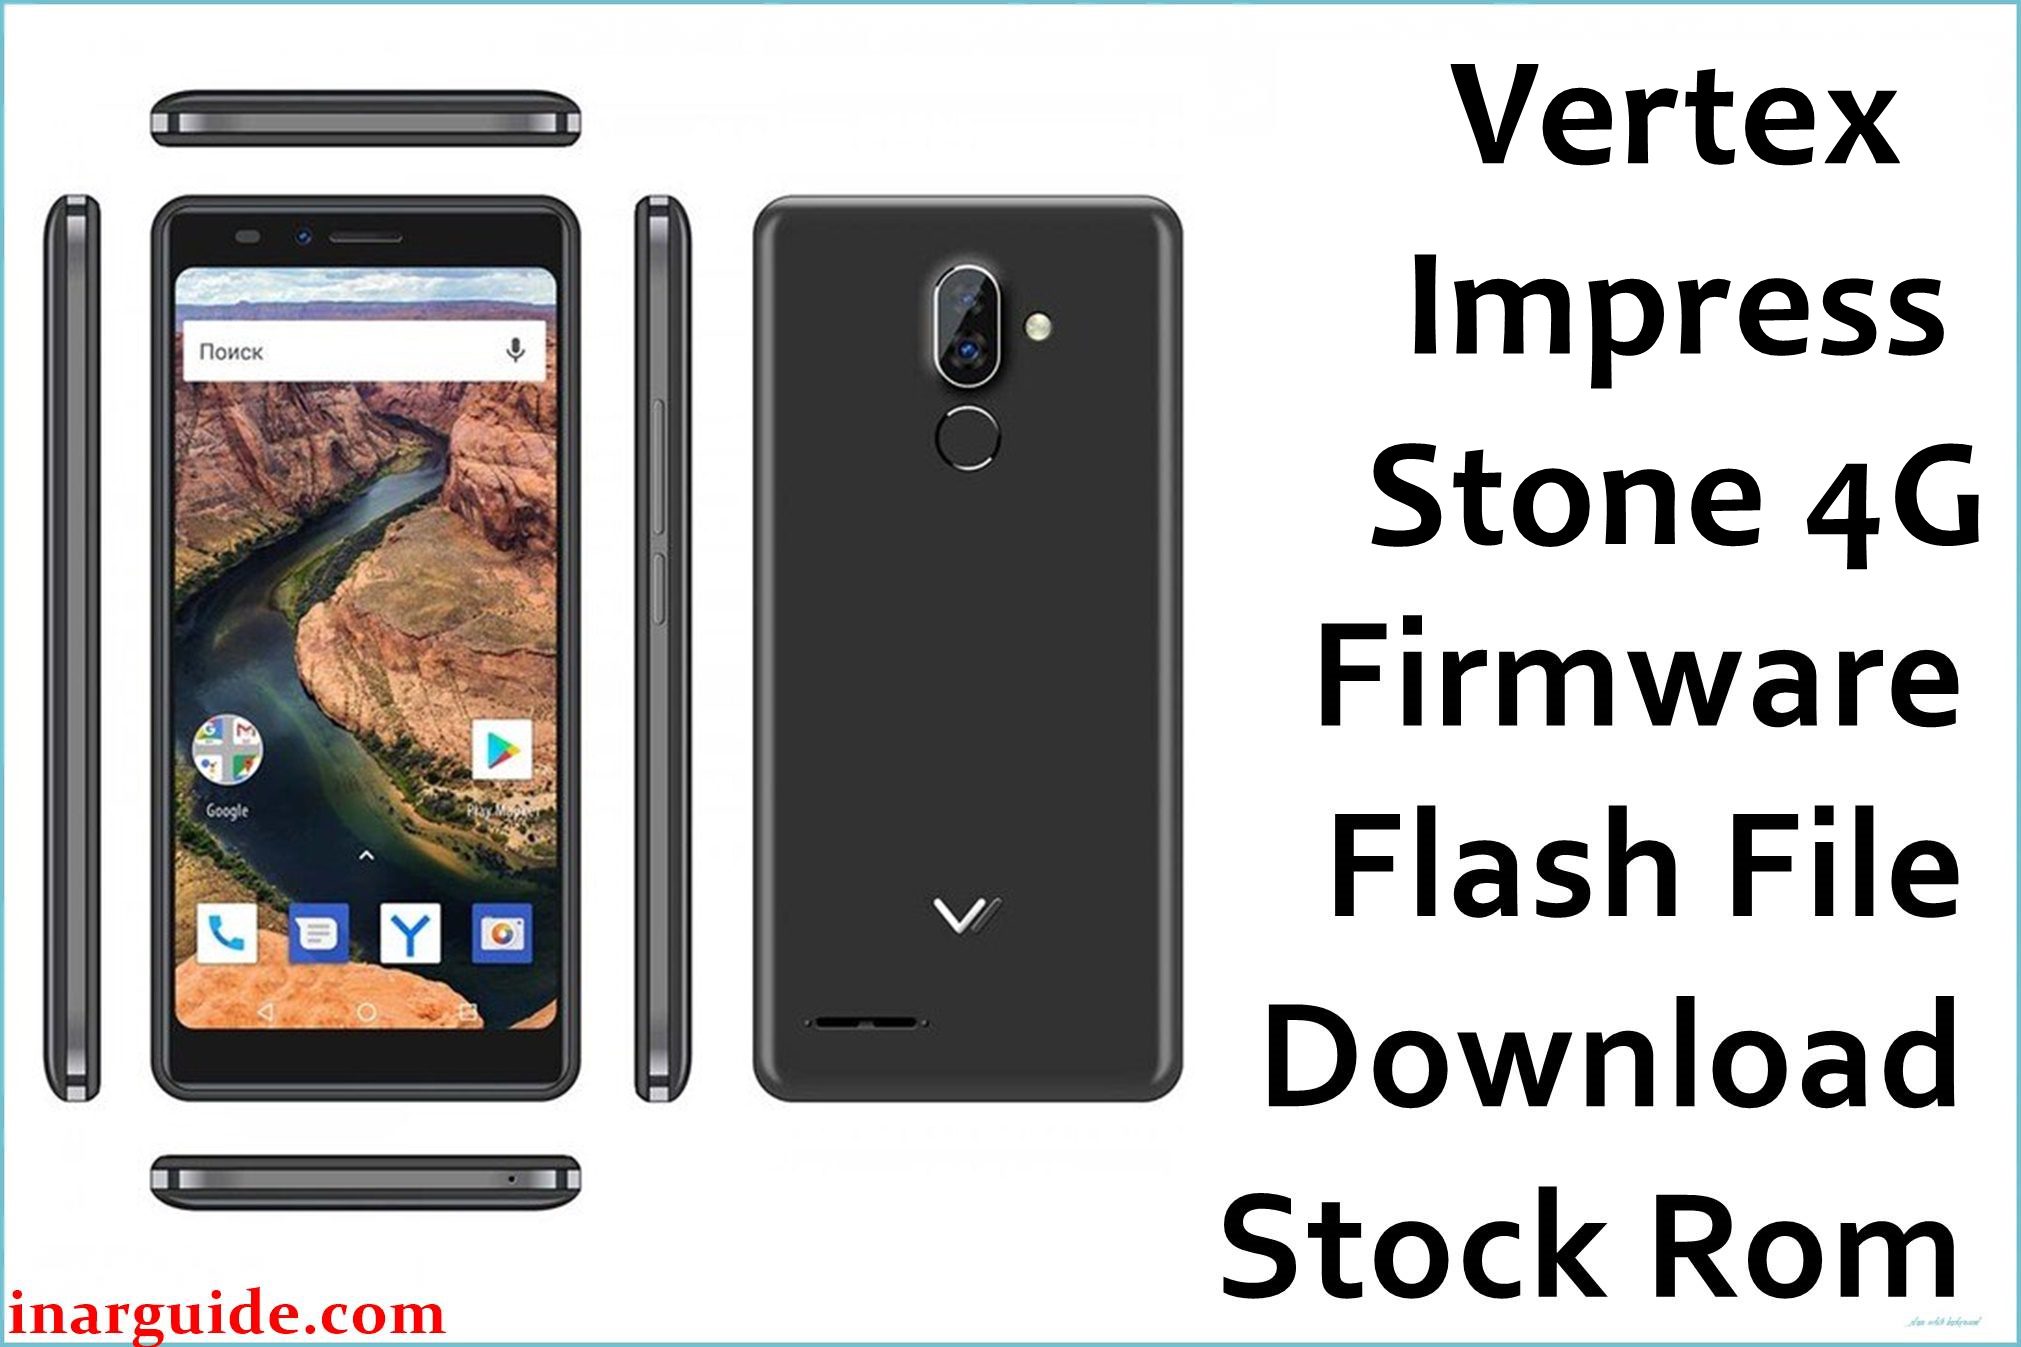 Vertex Impress Stone 4G